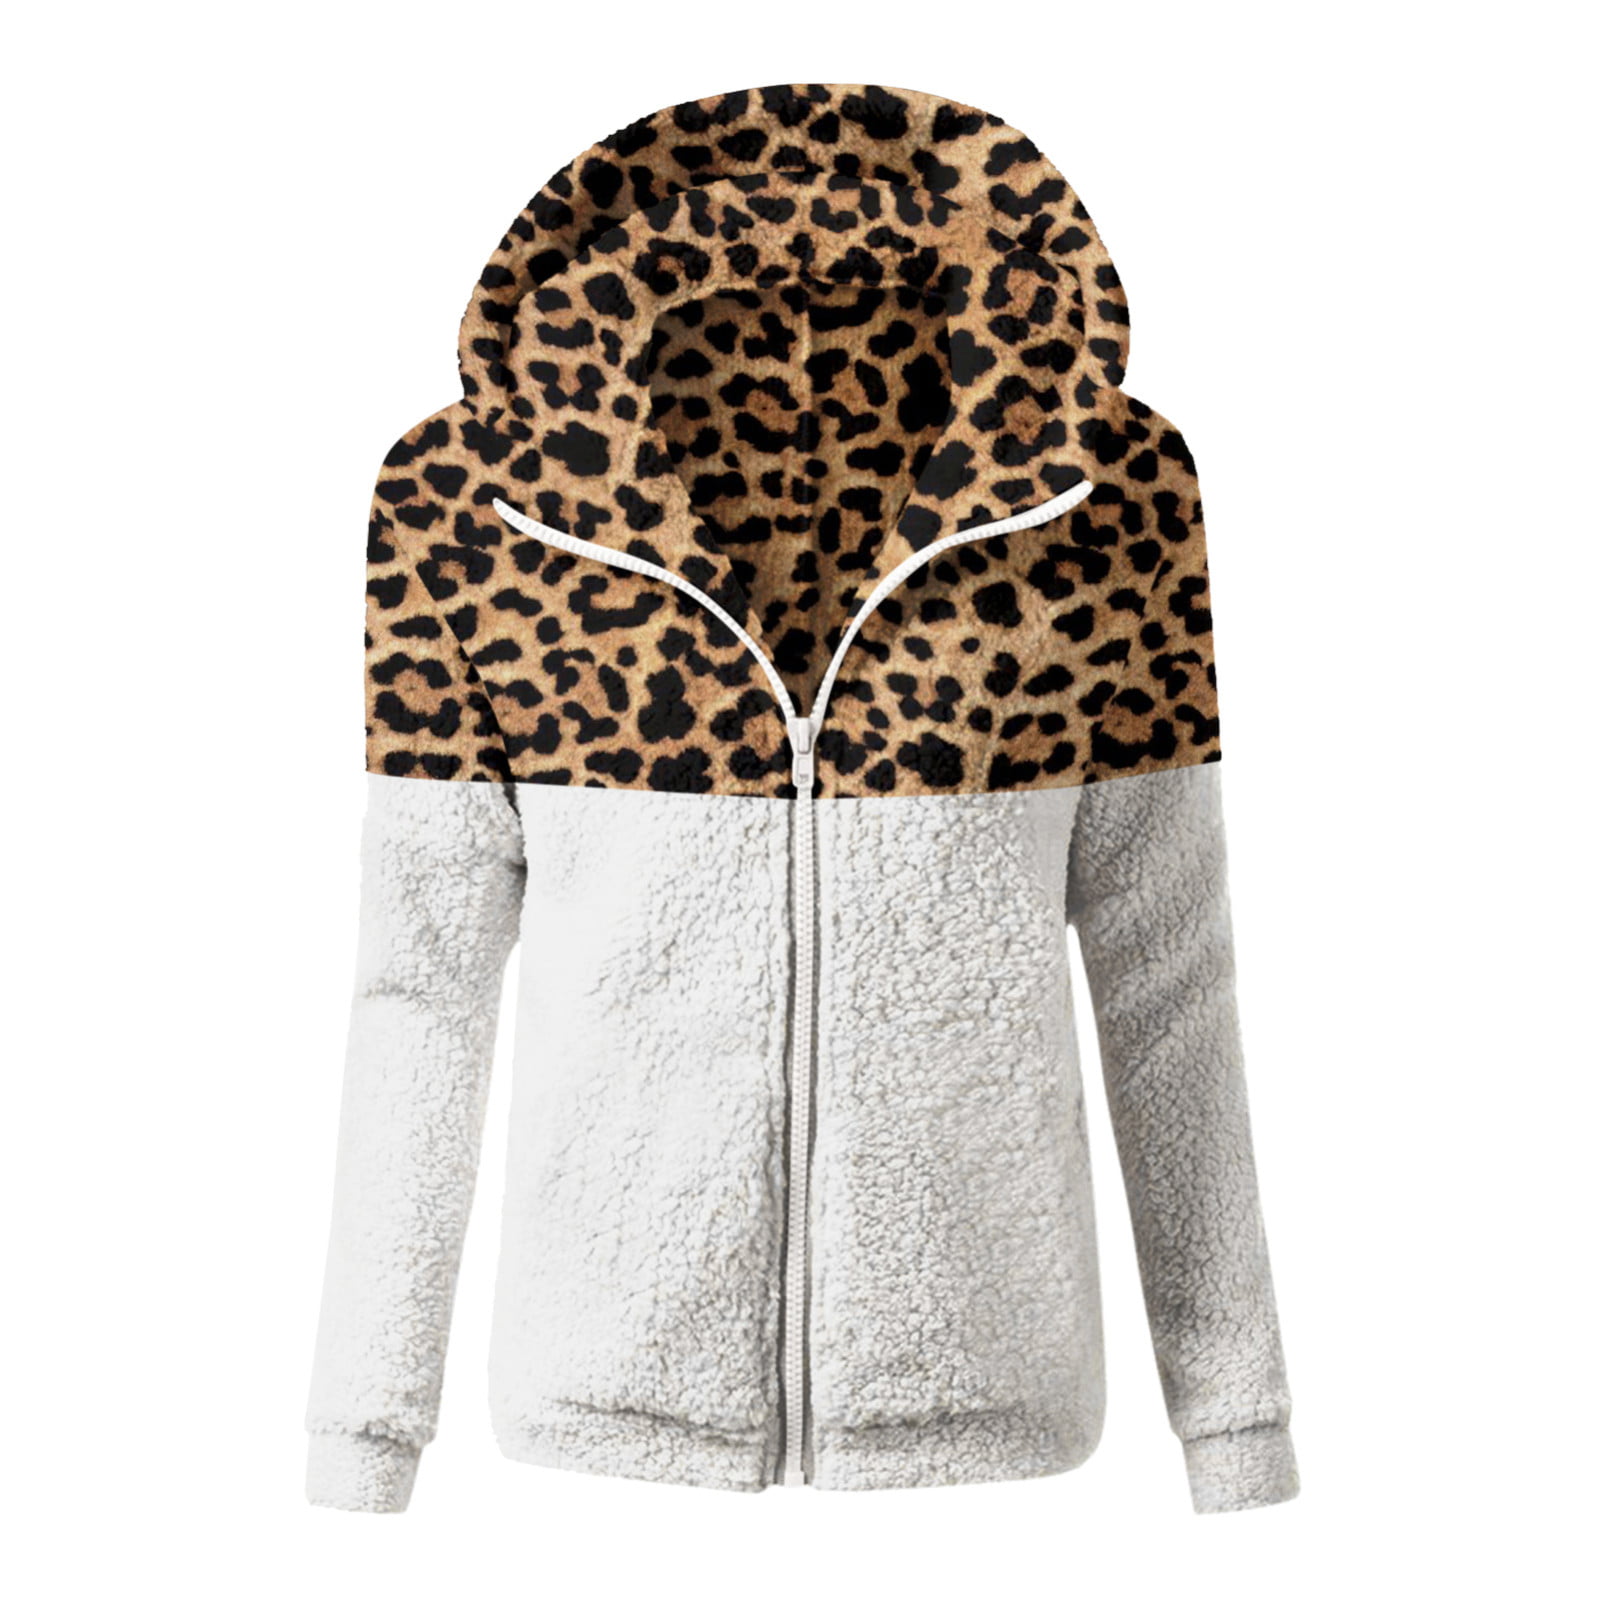 Men's Hooded Plush Jacket Lambwool Outwear Leopard Winter Loose Fit Thick Warm 